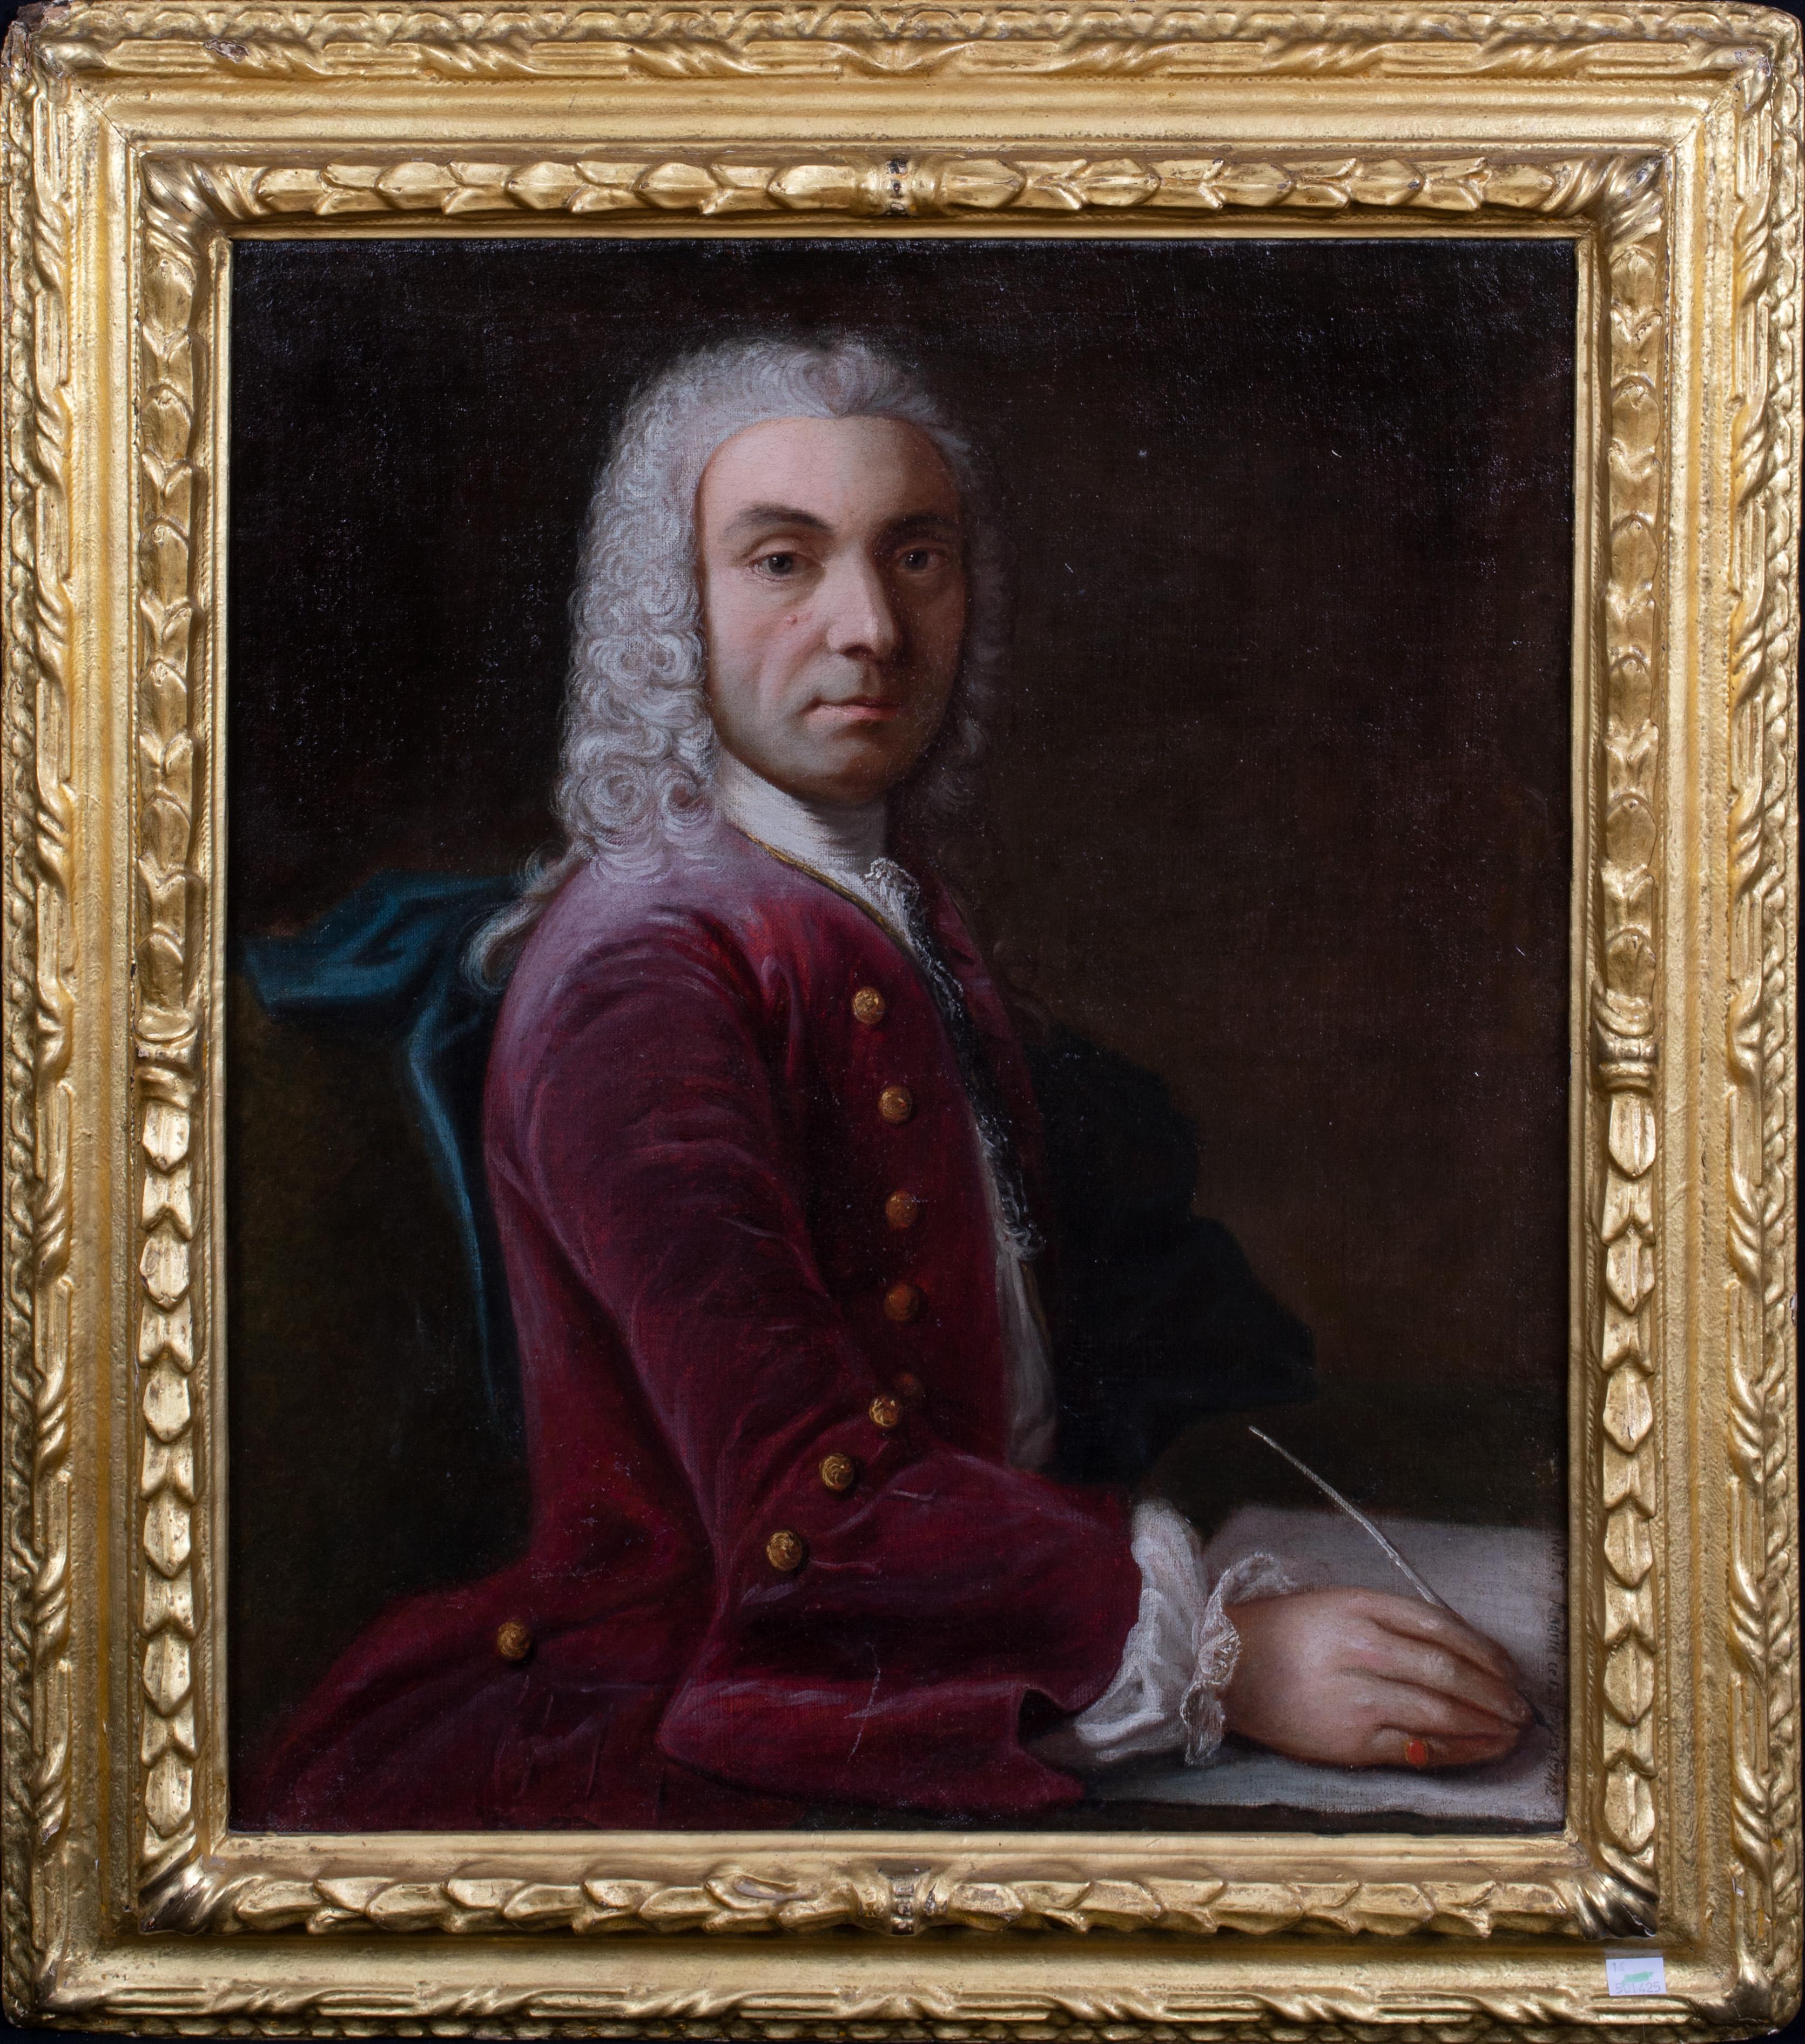 Porträt einer spanischen Marquise, 18. Jahrhundert  – Painting von Unknown